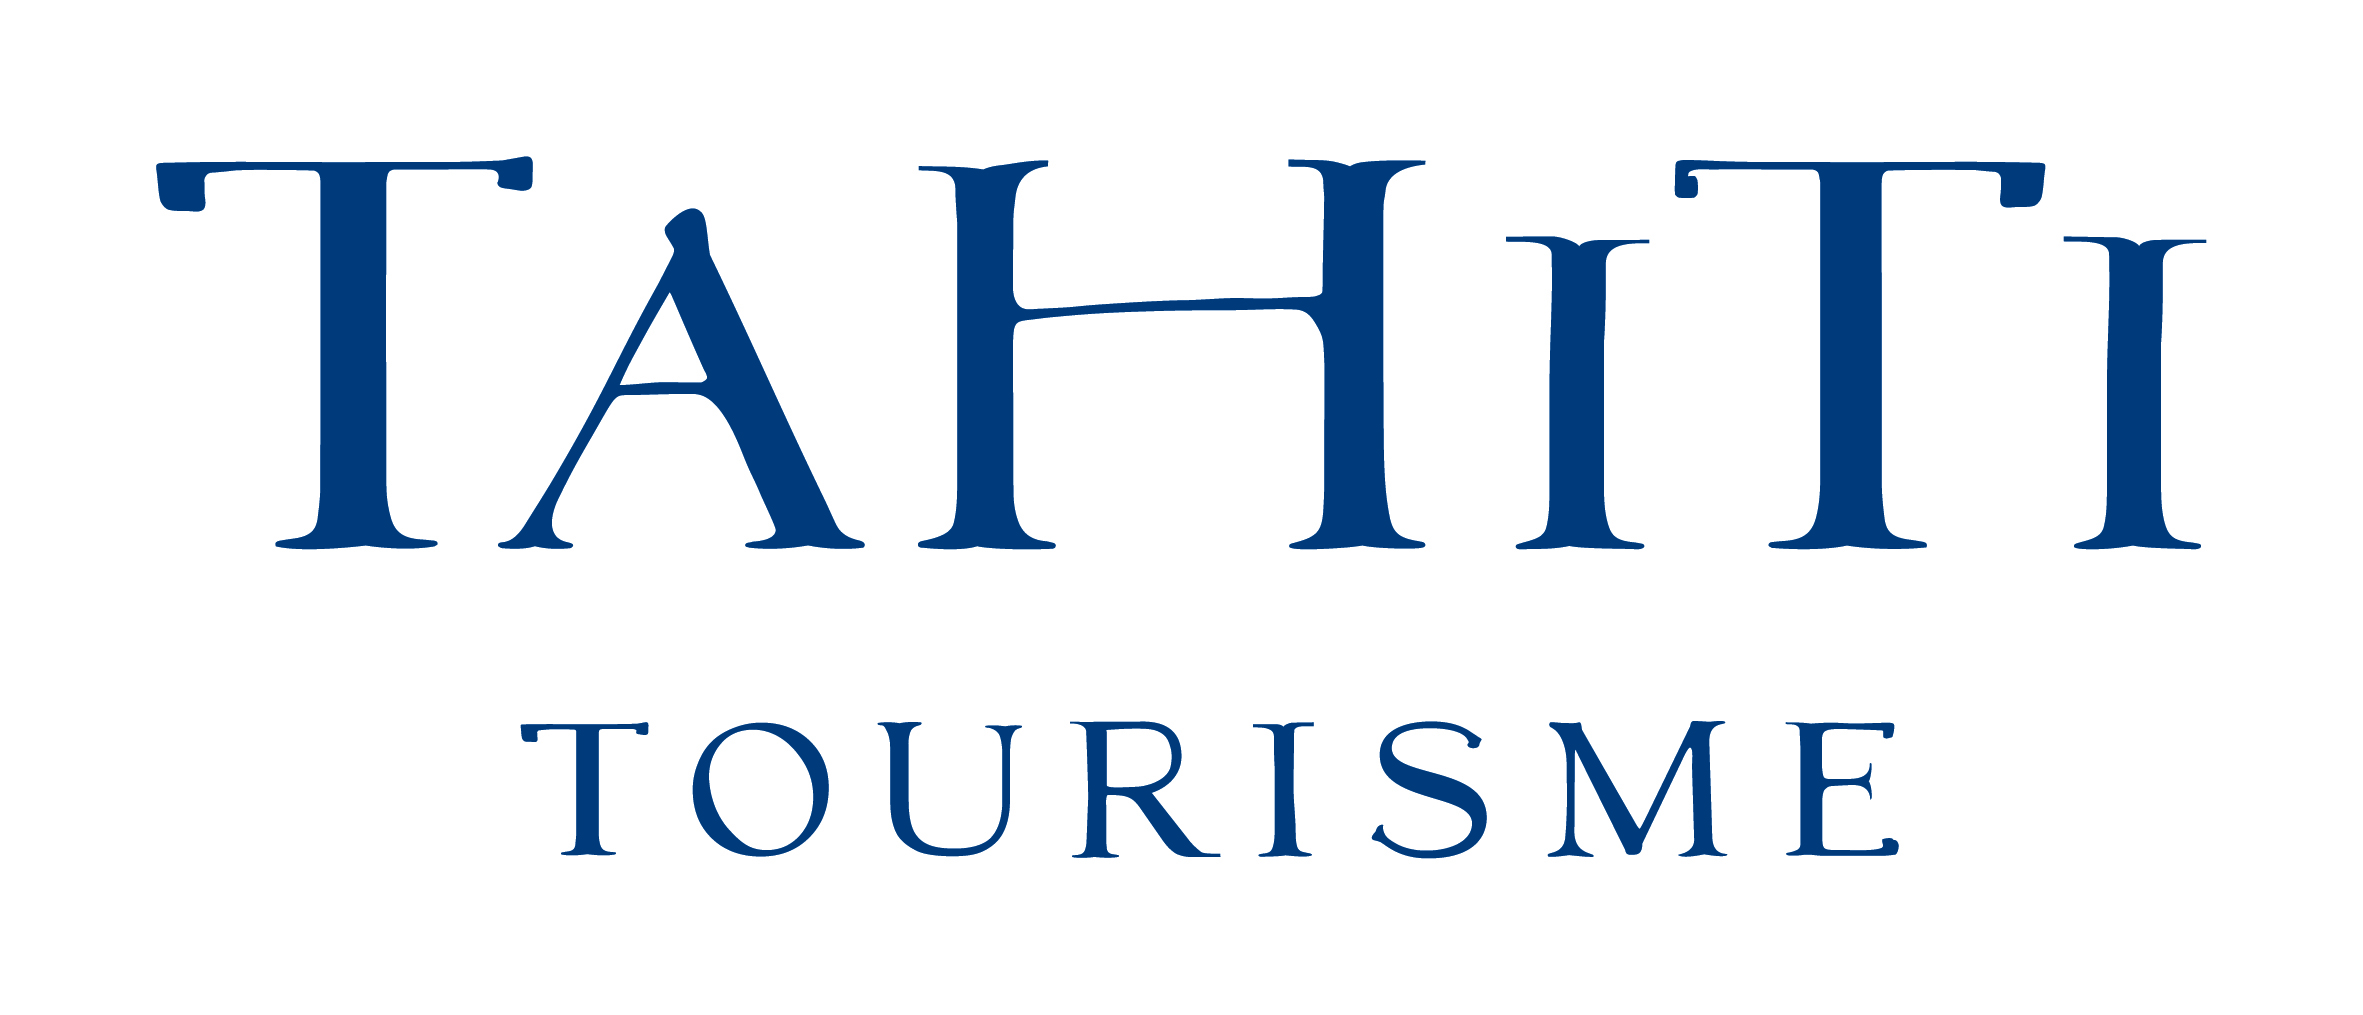 Tahiti Tourisme Corporate.jpg